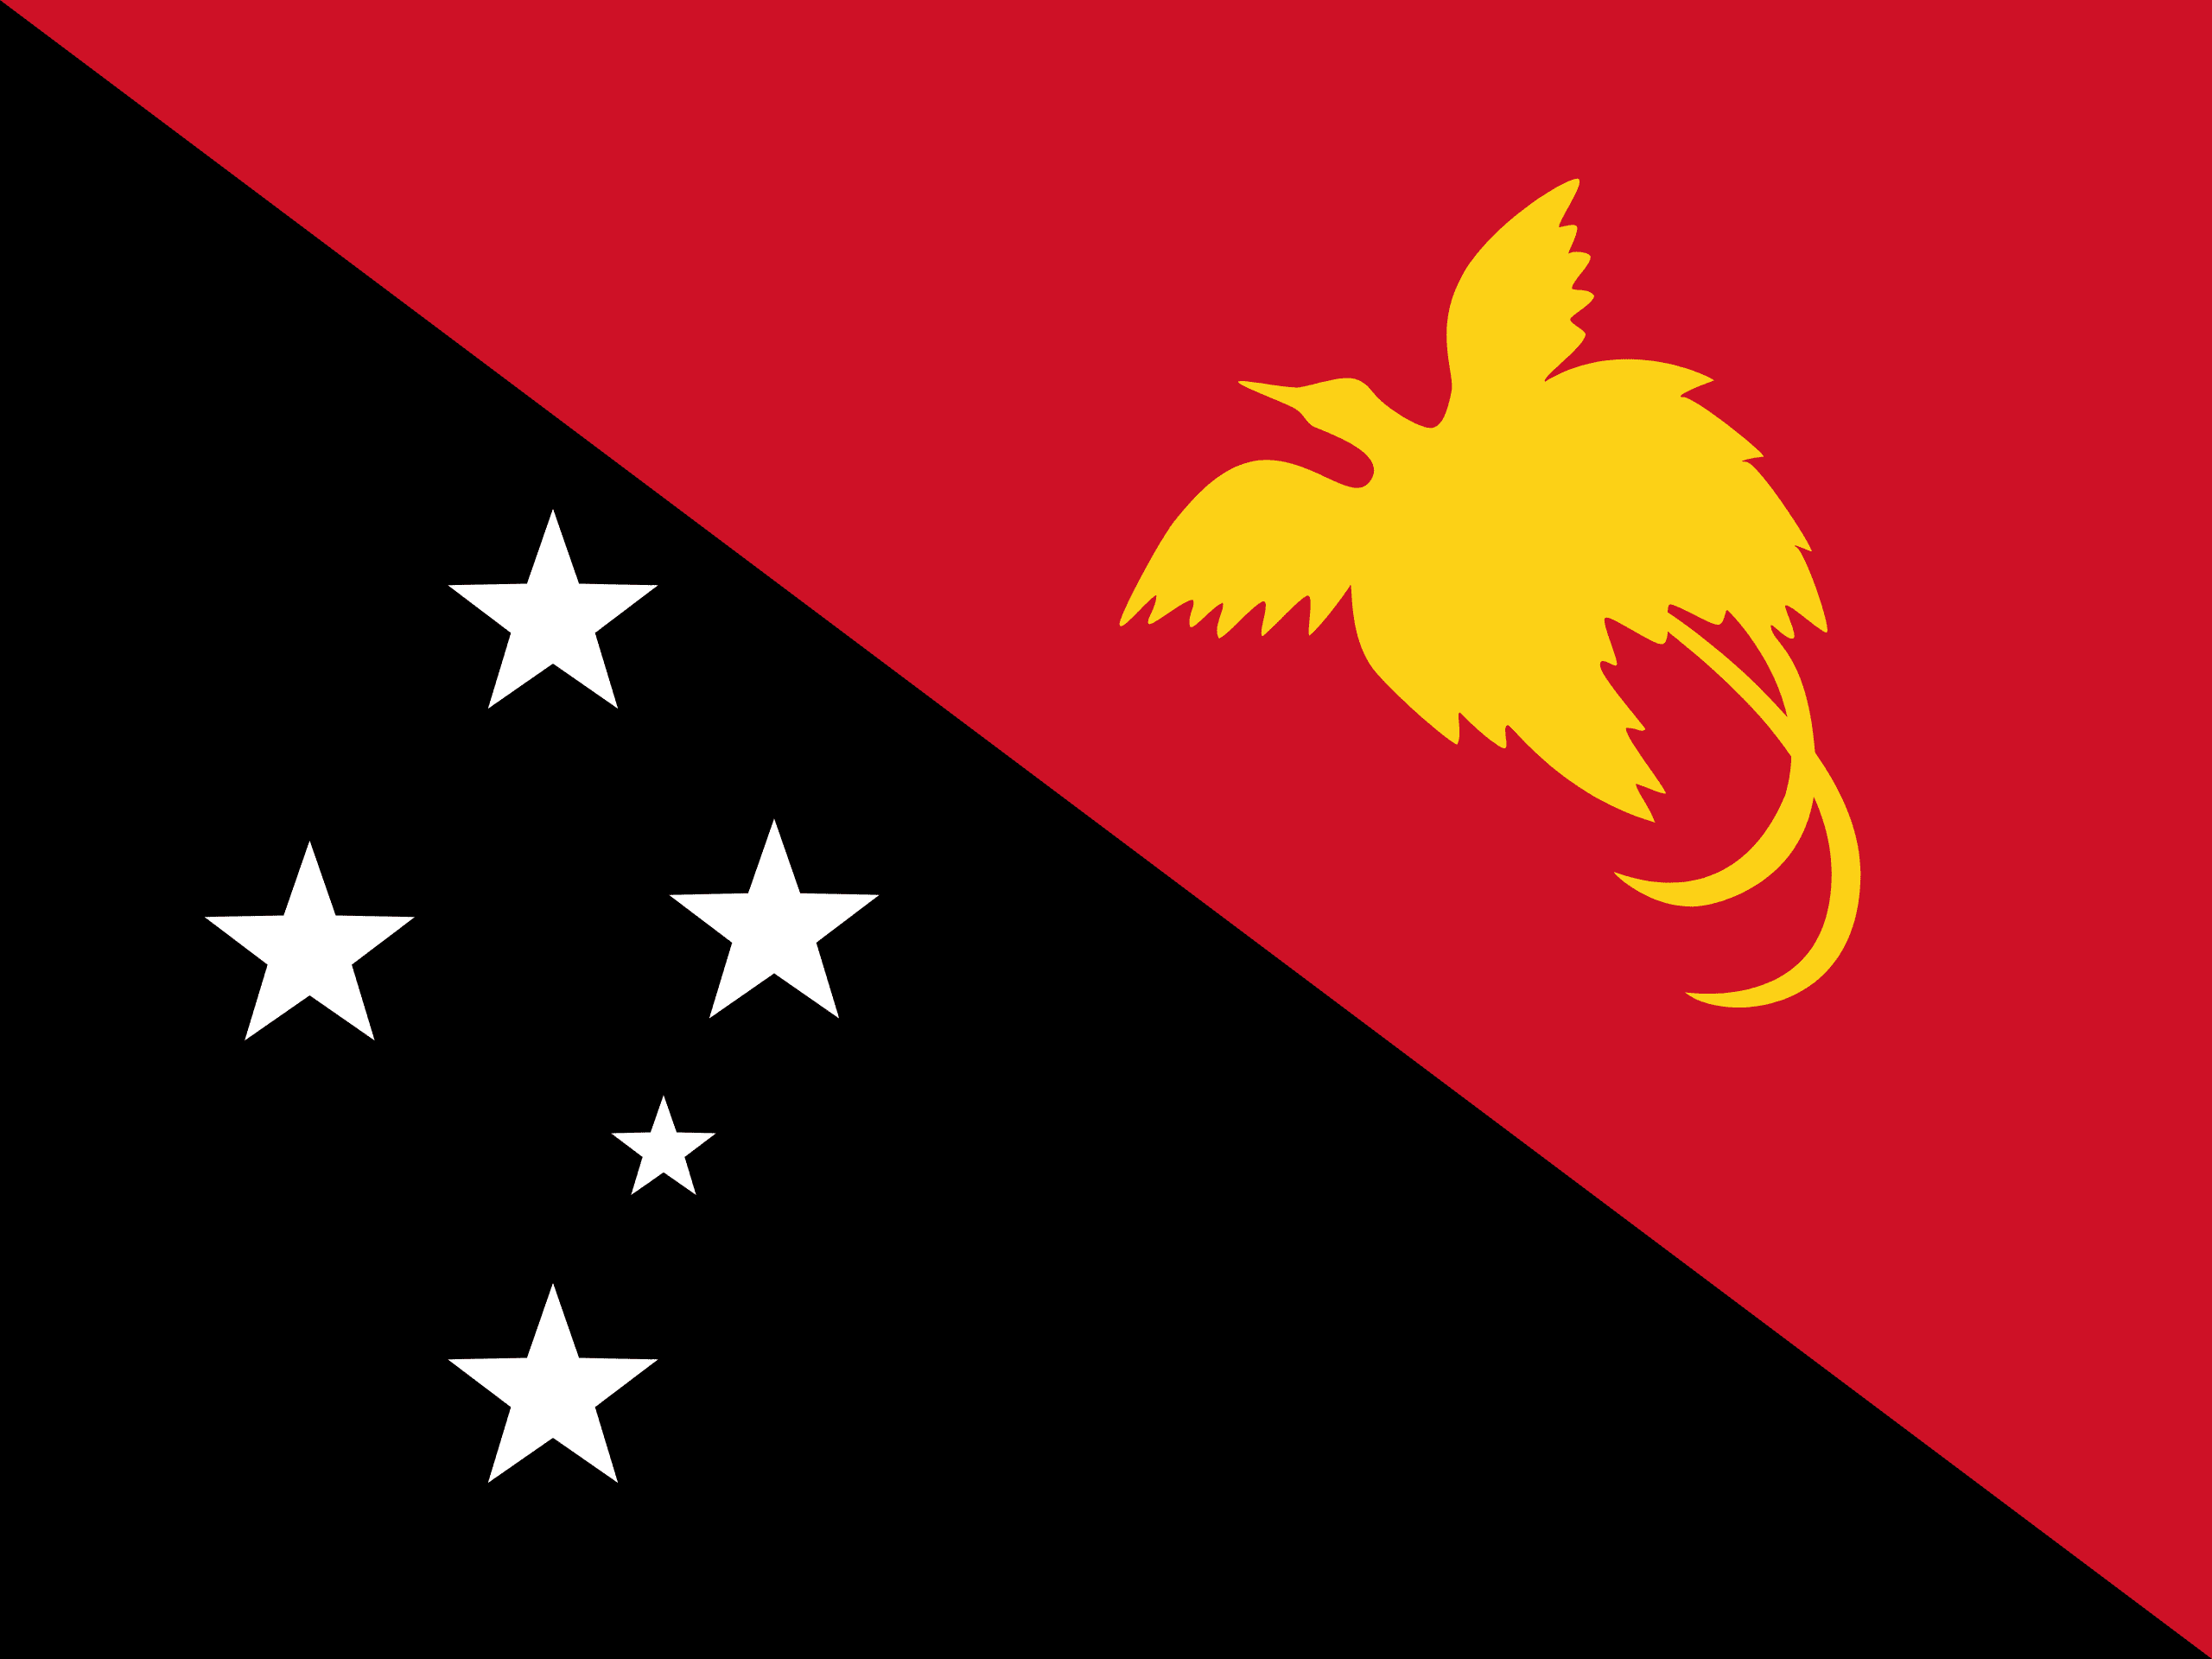 ۵Moresby, Papua New Guinea Īȱ,Ͳ¼